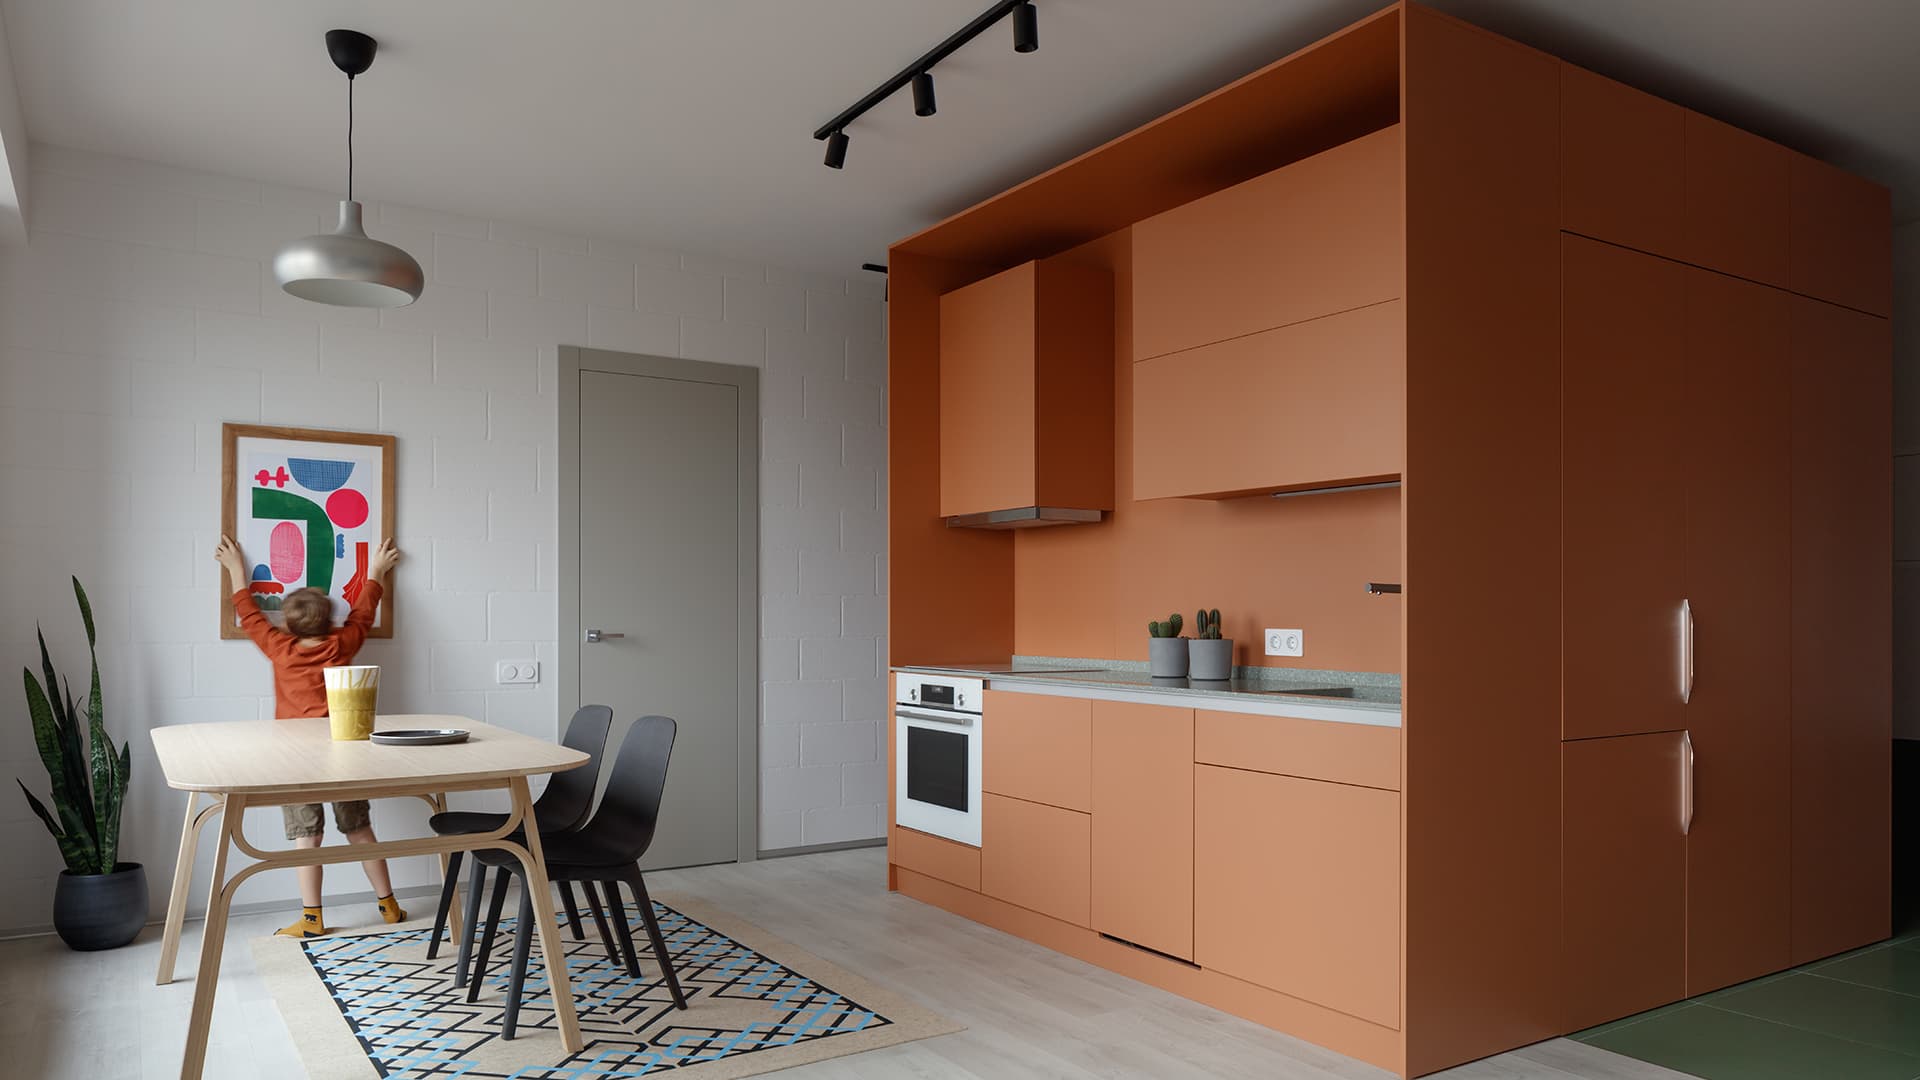 Московская квартира с многофункциональным мебельным кубом — проект DVEKATI